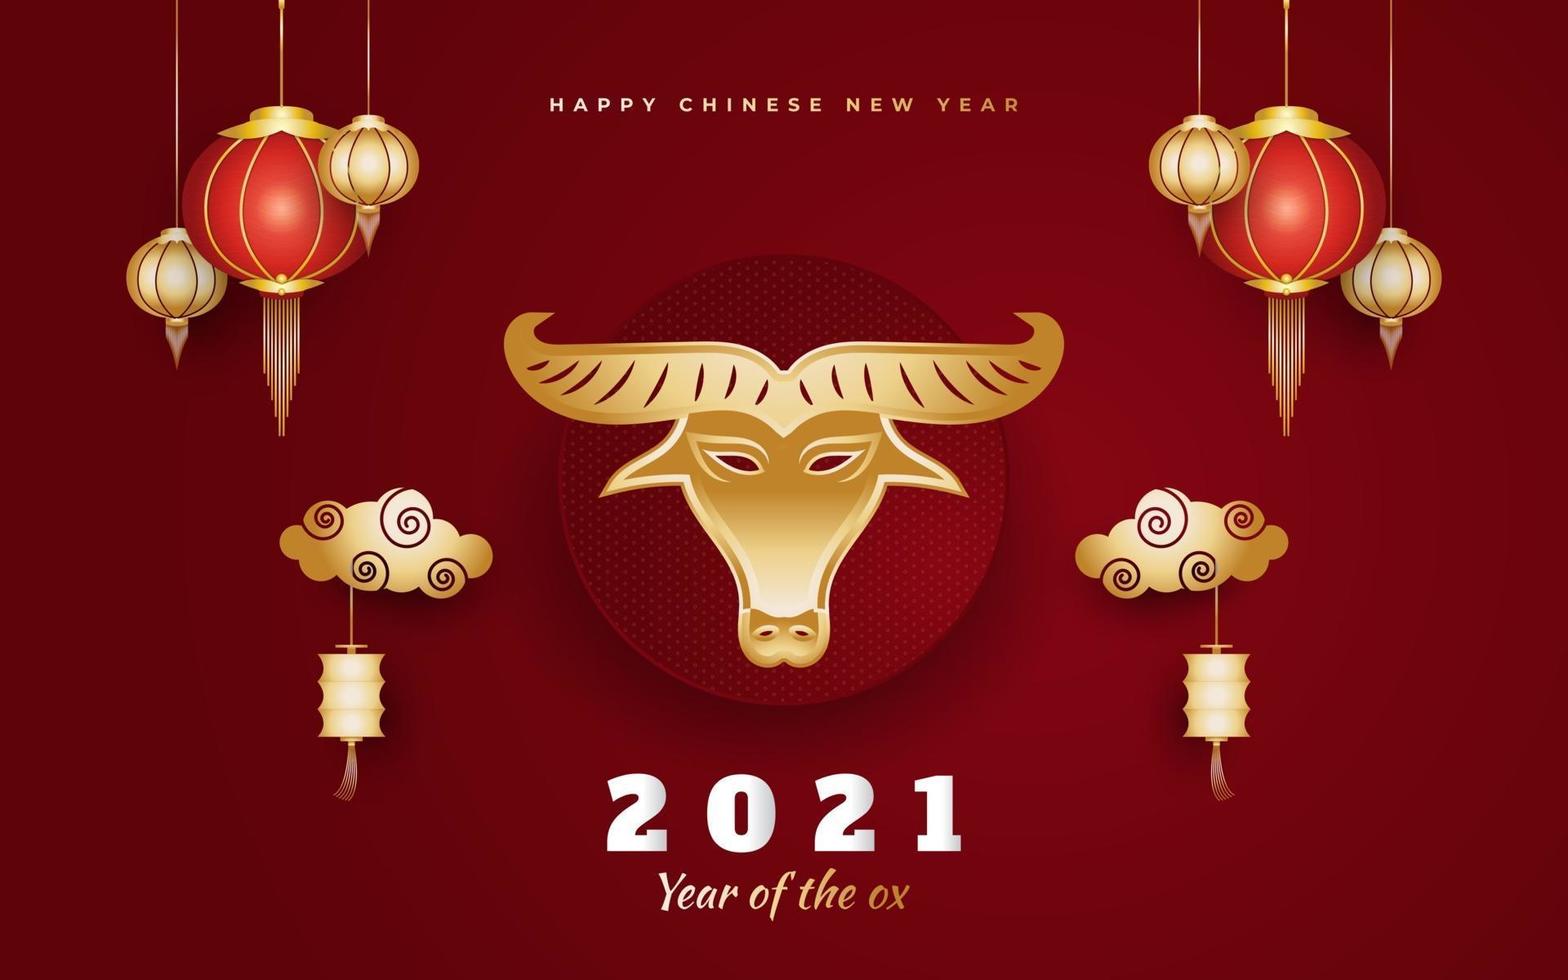 ano novo chinês 2021 ano do boi vetor